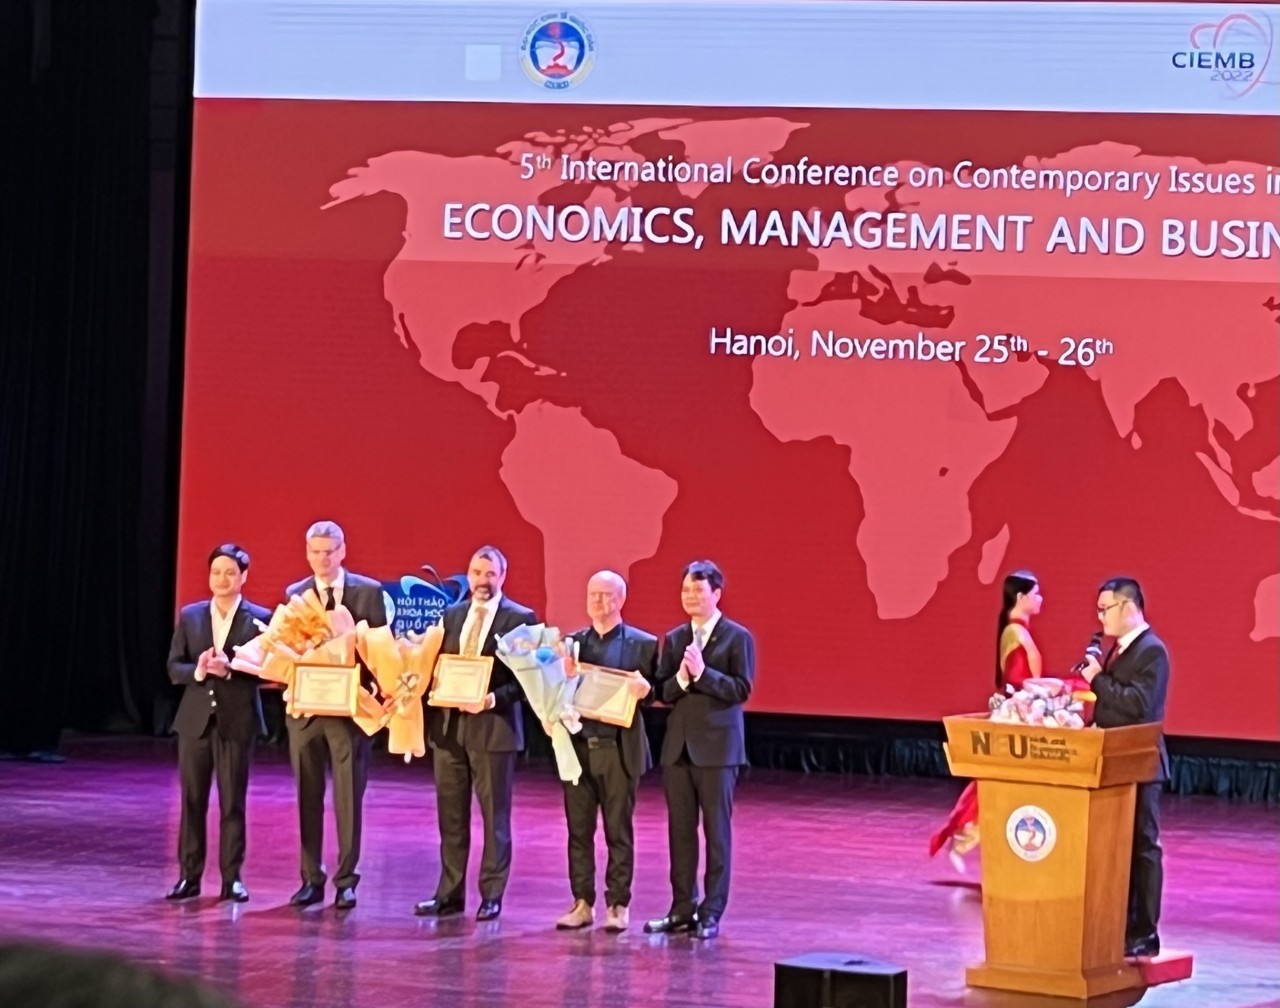 CIEMB 2022: Hội thảo khoa học về chính sách kinh tế, kinh doanh hậu Covid-19